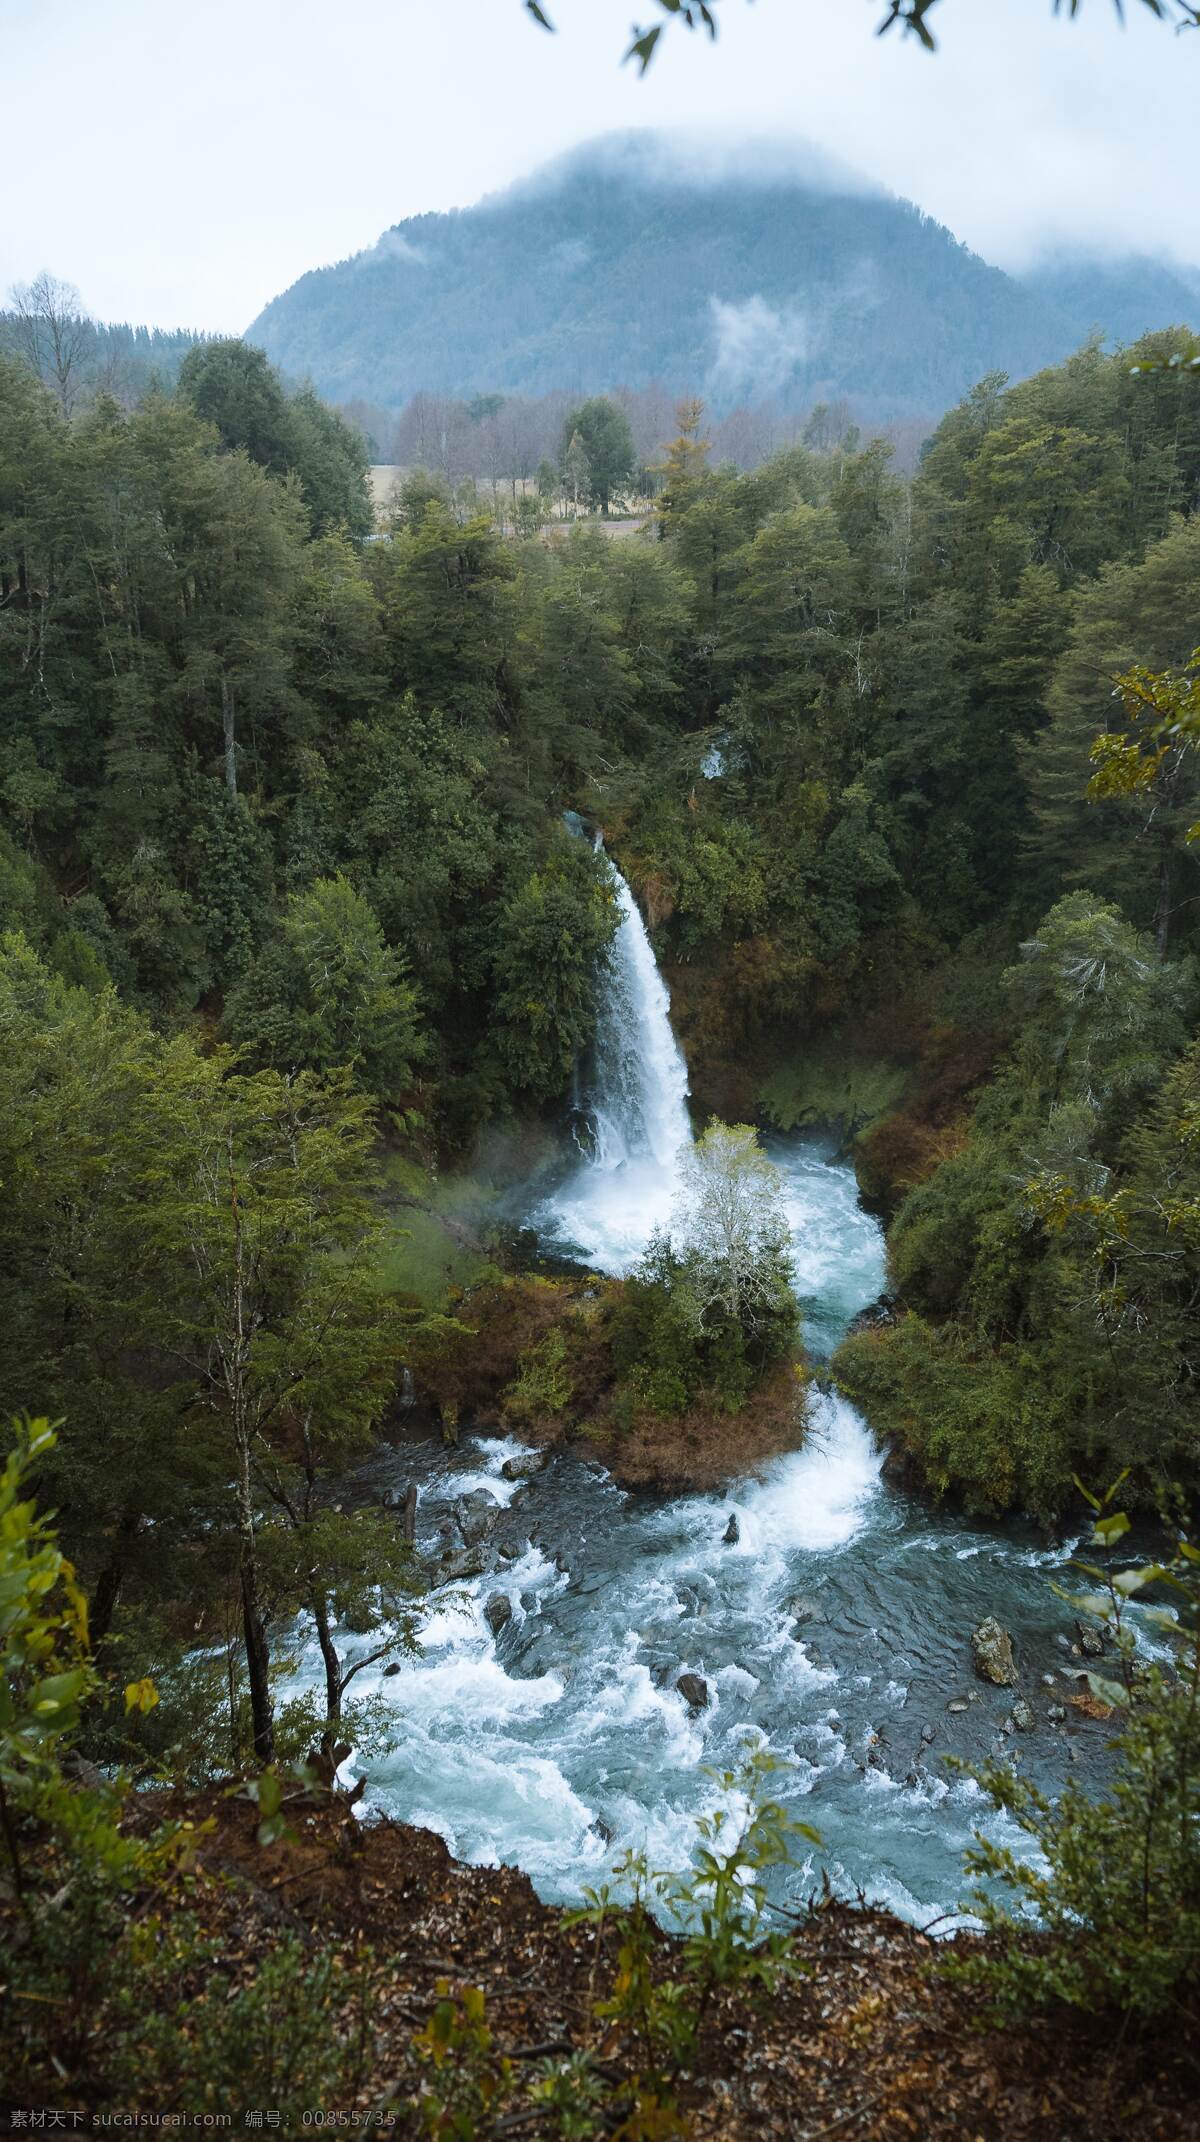 大自然 欧美 户外 自然 绿色 蓝天 白云 森林 小溪 河流 瀑布 清新 拍摄 摄影类 自然景观 山水风景